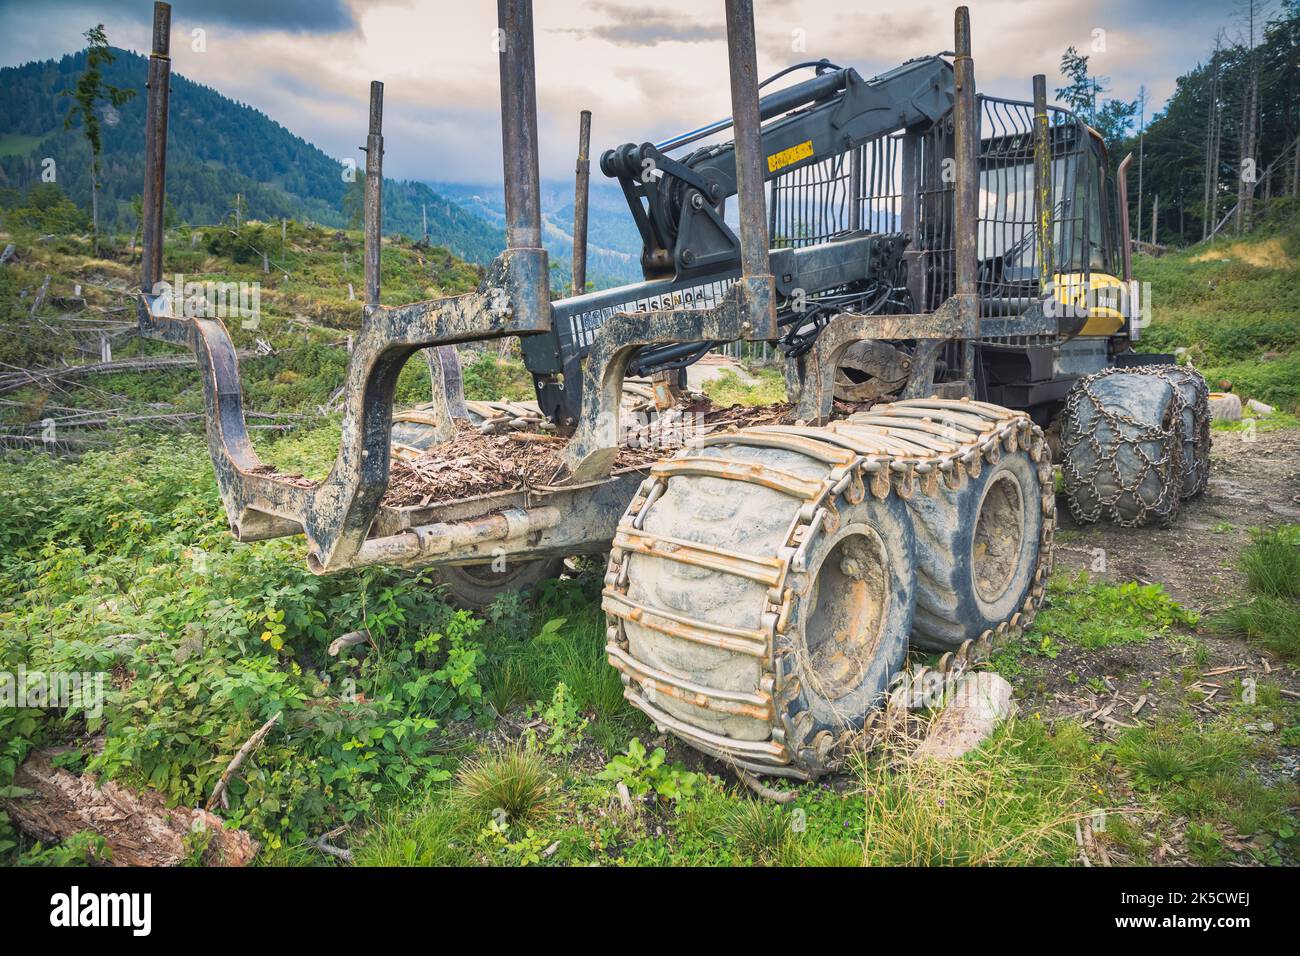 Italien, Venetien, Provinz Belluno, Dolomiten. Harvester und Forwarder Forstfahrzeug in einem Wald von dem Sturm Vaia getroffen Stockfoto